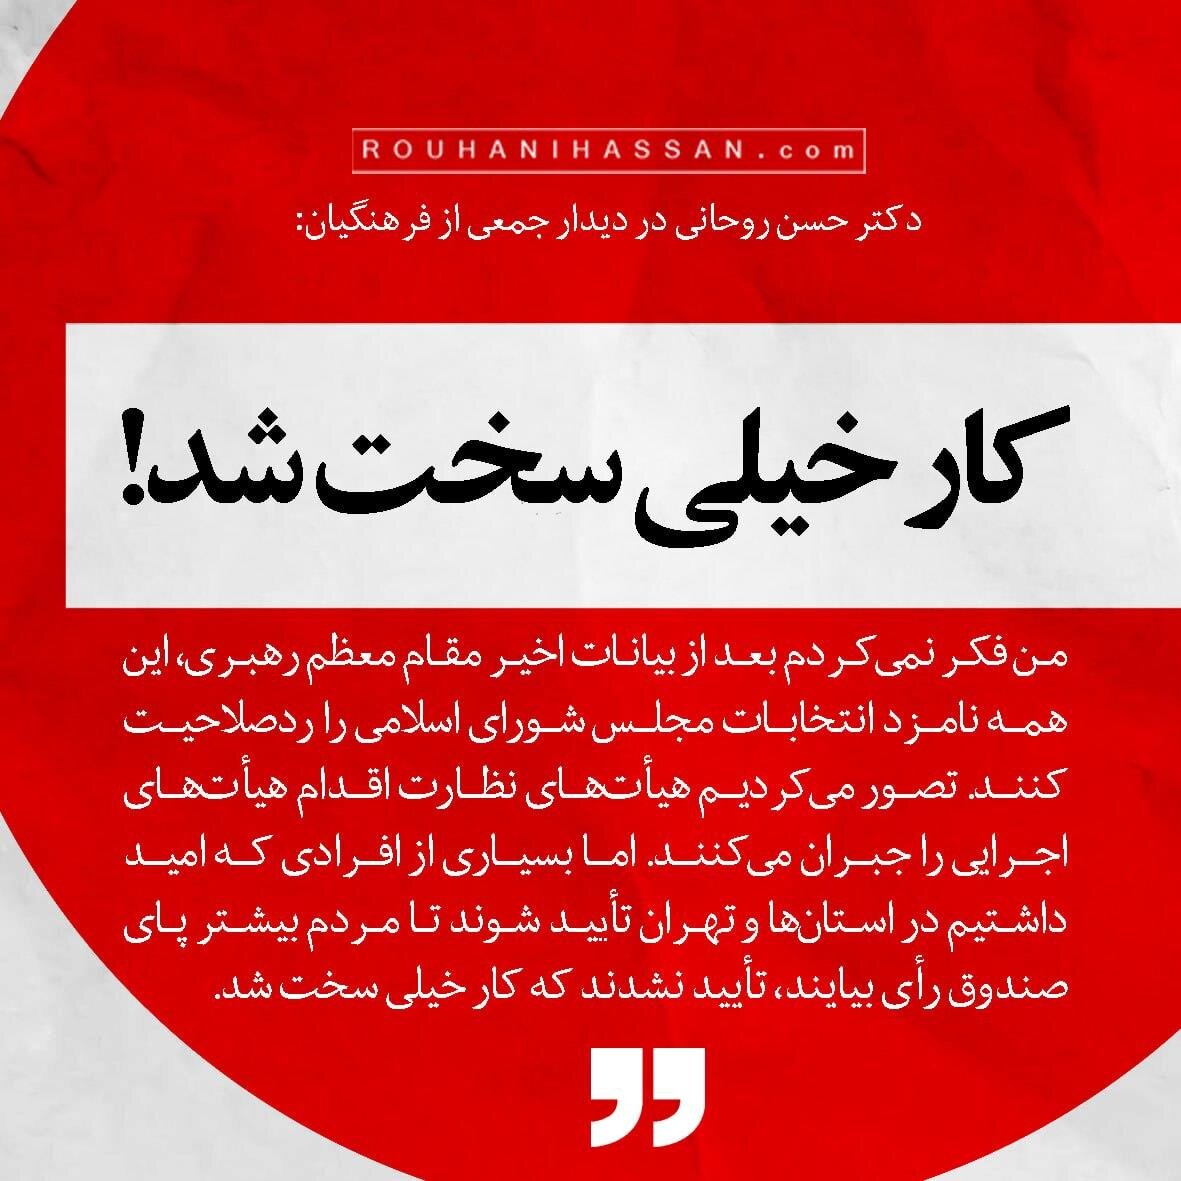 حسن روحانی: کار خیلی سخت شد/ فکر نمی کردم این همه را رد صلاحیت کنند